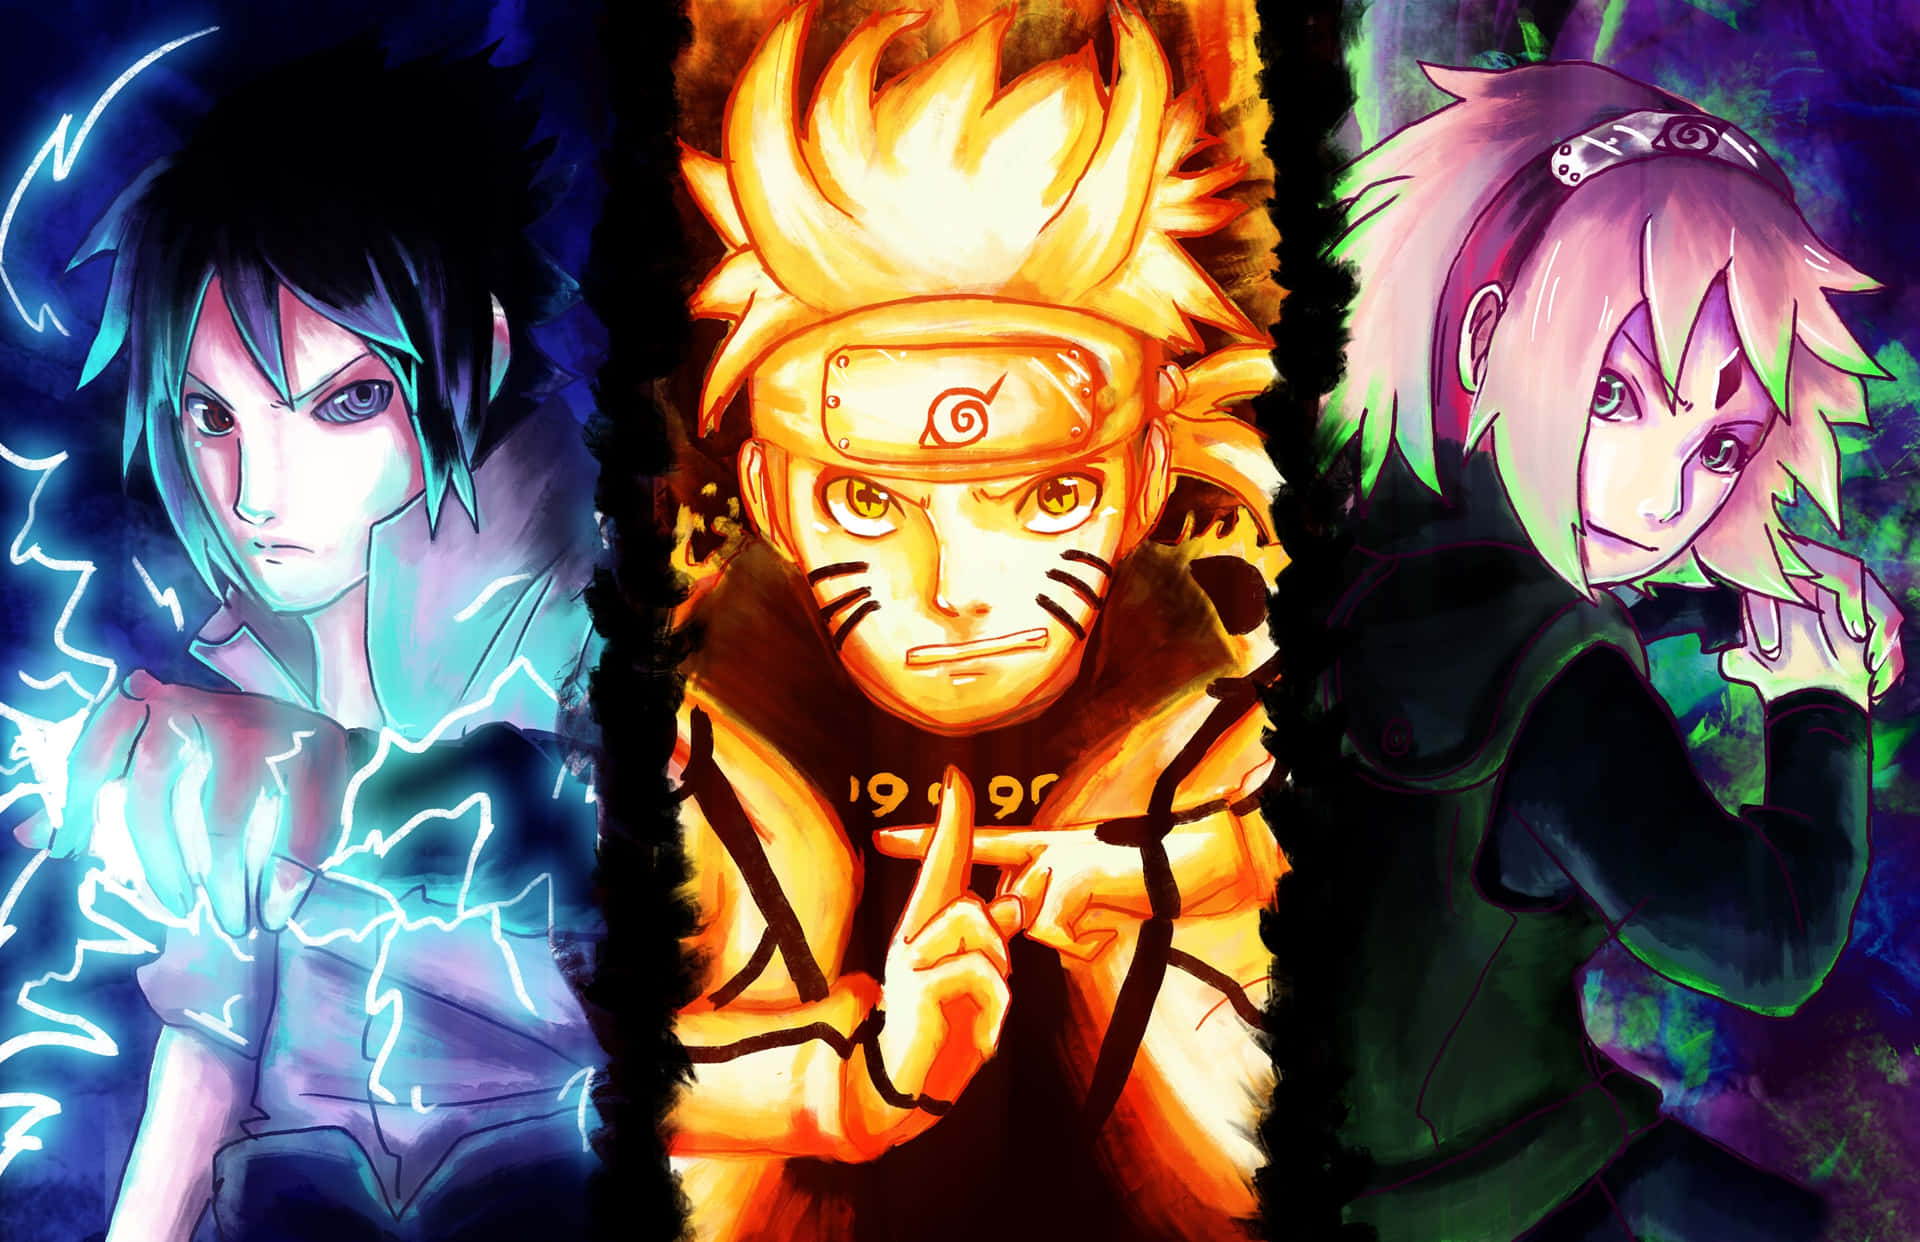 Team 7 Naruto Wallpaper: Hình nền Team 7 của chúng tôi mang đến cho bạn một cảm giác về sự đoàn kết và sức mạnh nhóm. Với những hình ảnh đẹp và tinh tế, bạn sẽ được đắm mình trong thế giới Naruto và theo dõi chặng đường của các nhân vật.